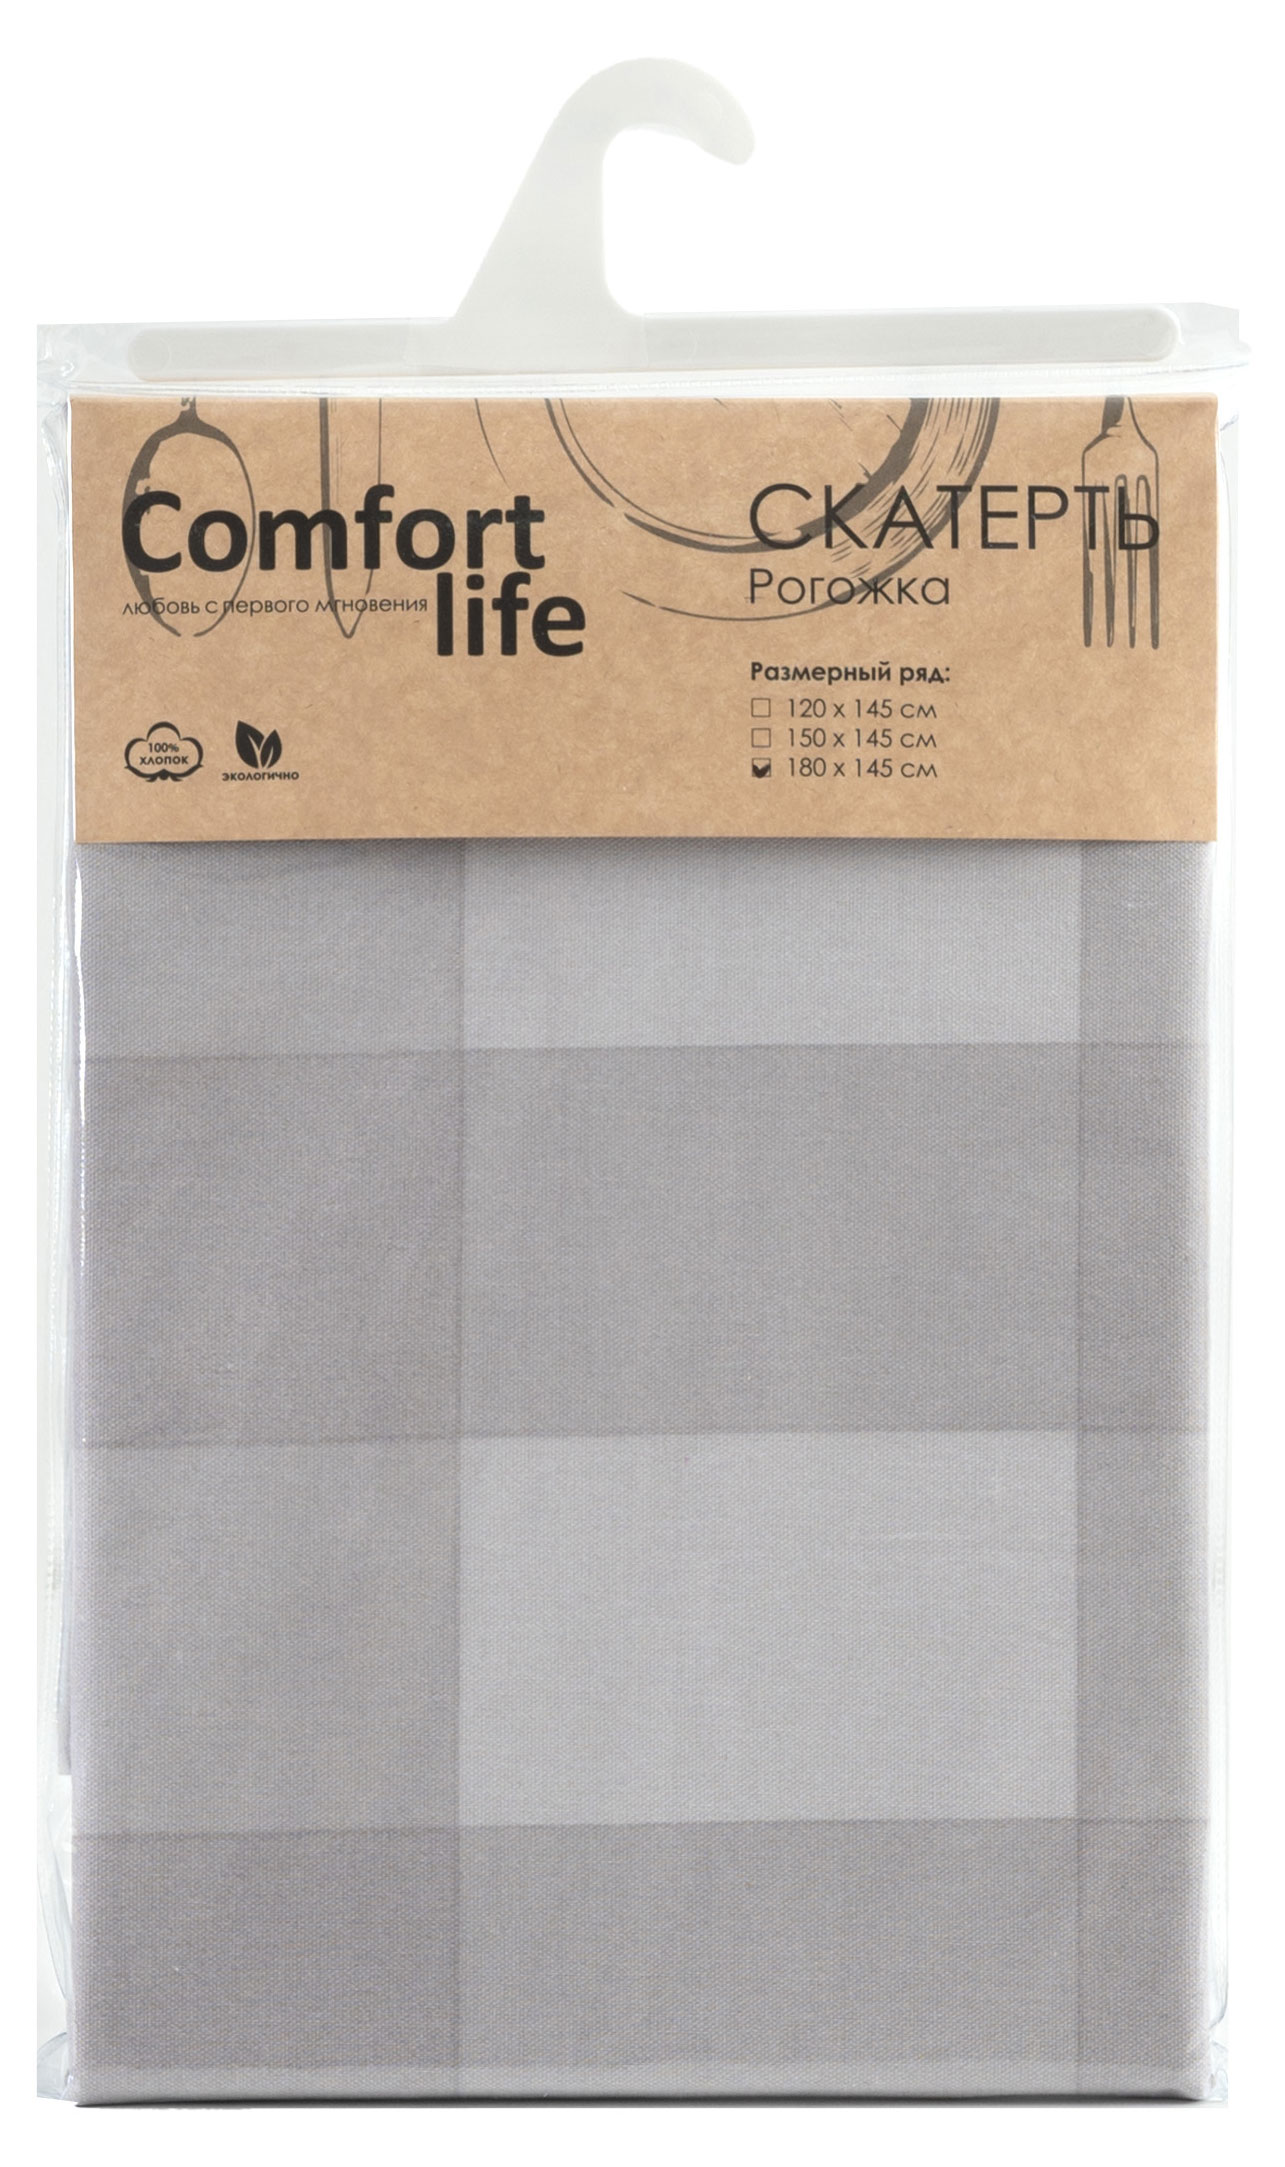 Comfort Life | Скатерть Comfort Life рогожка, 180х145 см